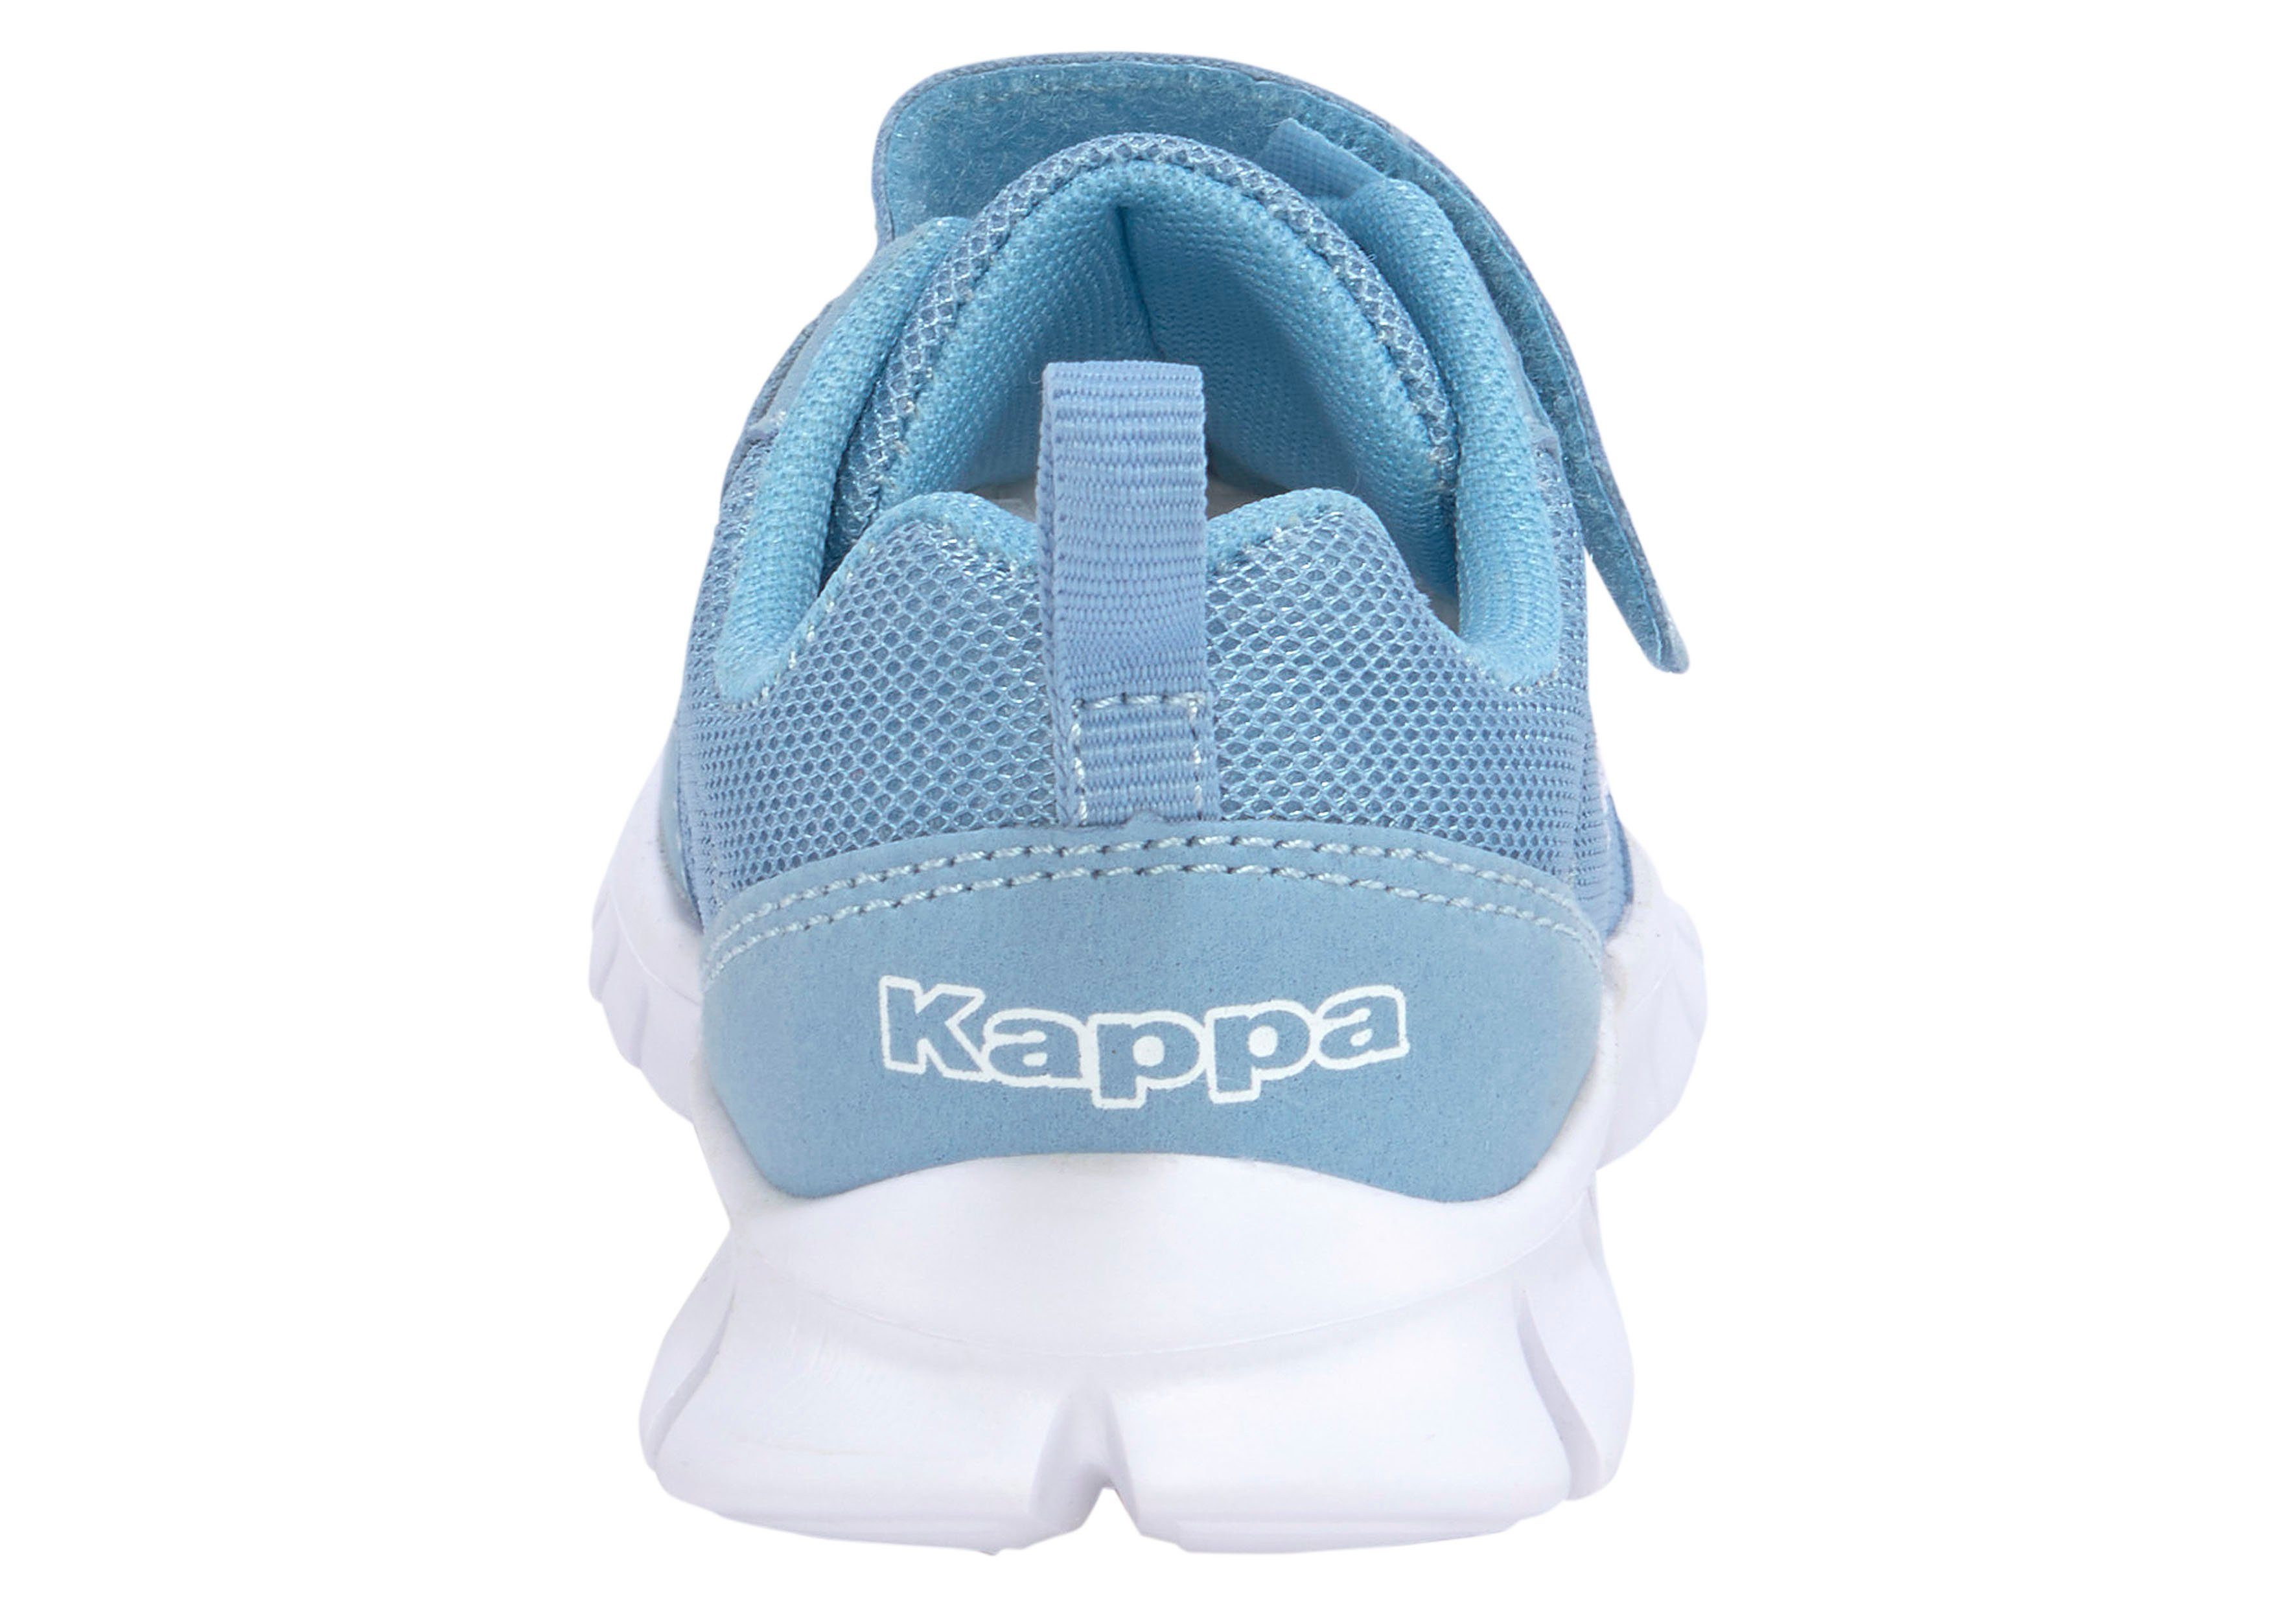 Kappa blau Sneaker